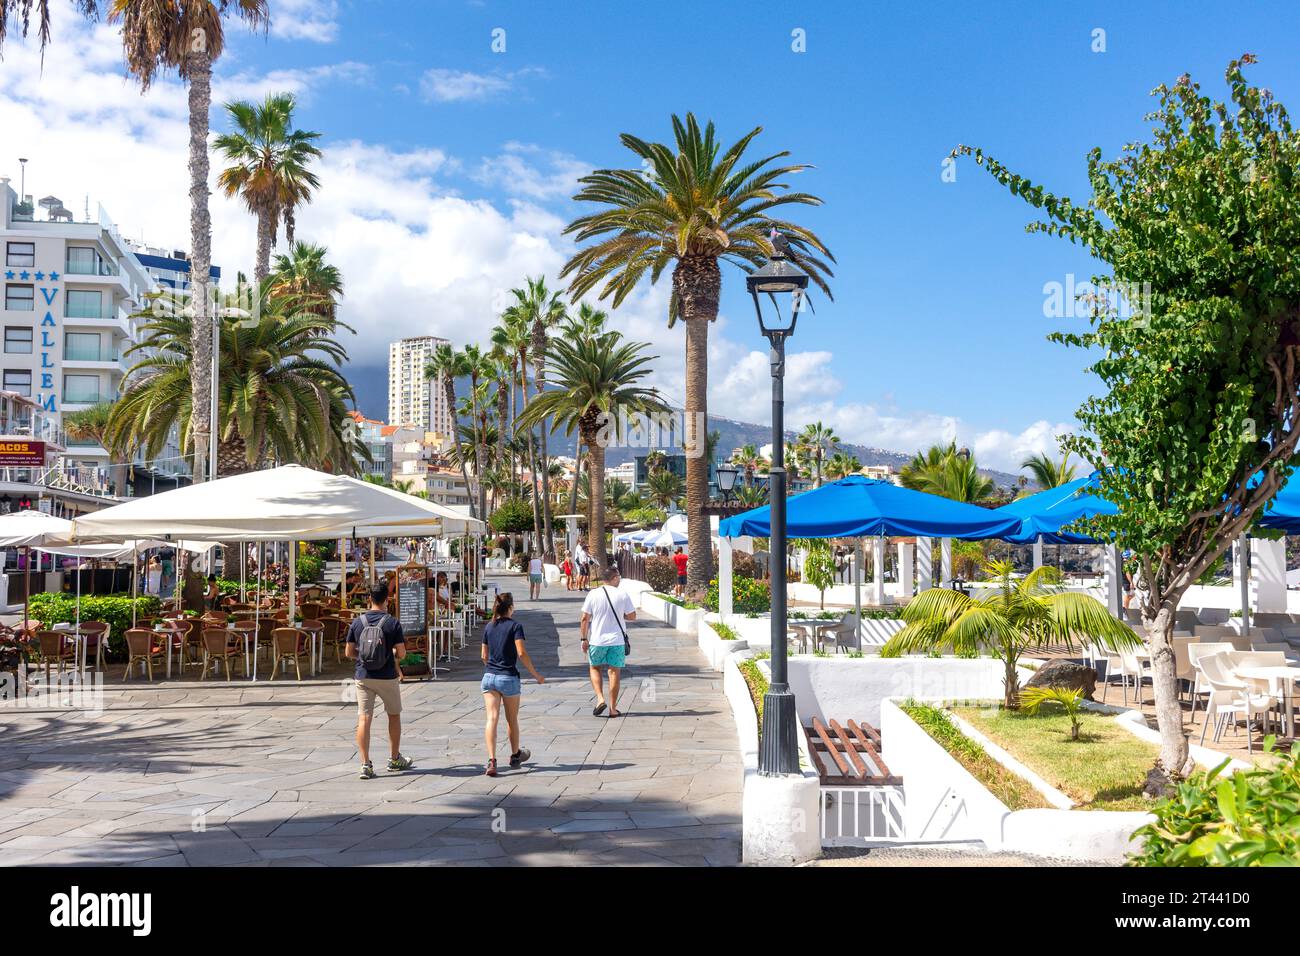 Uferpromenade, Avenue de Cristobal Colón, Puerto de la Cruz, Teneriffa, Kanarische Inseln, Königreich Spanien Stockfoto